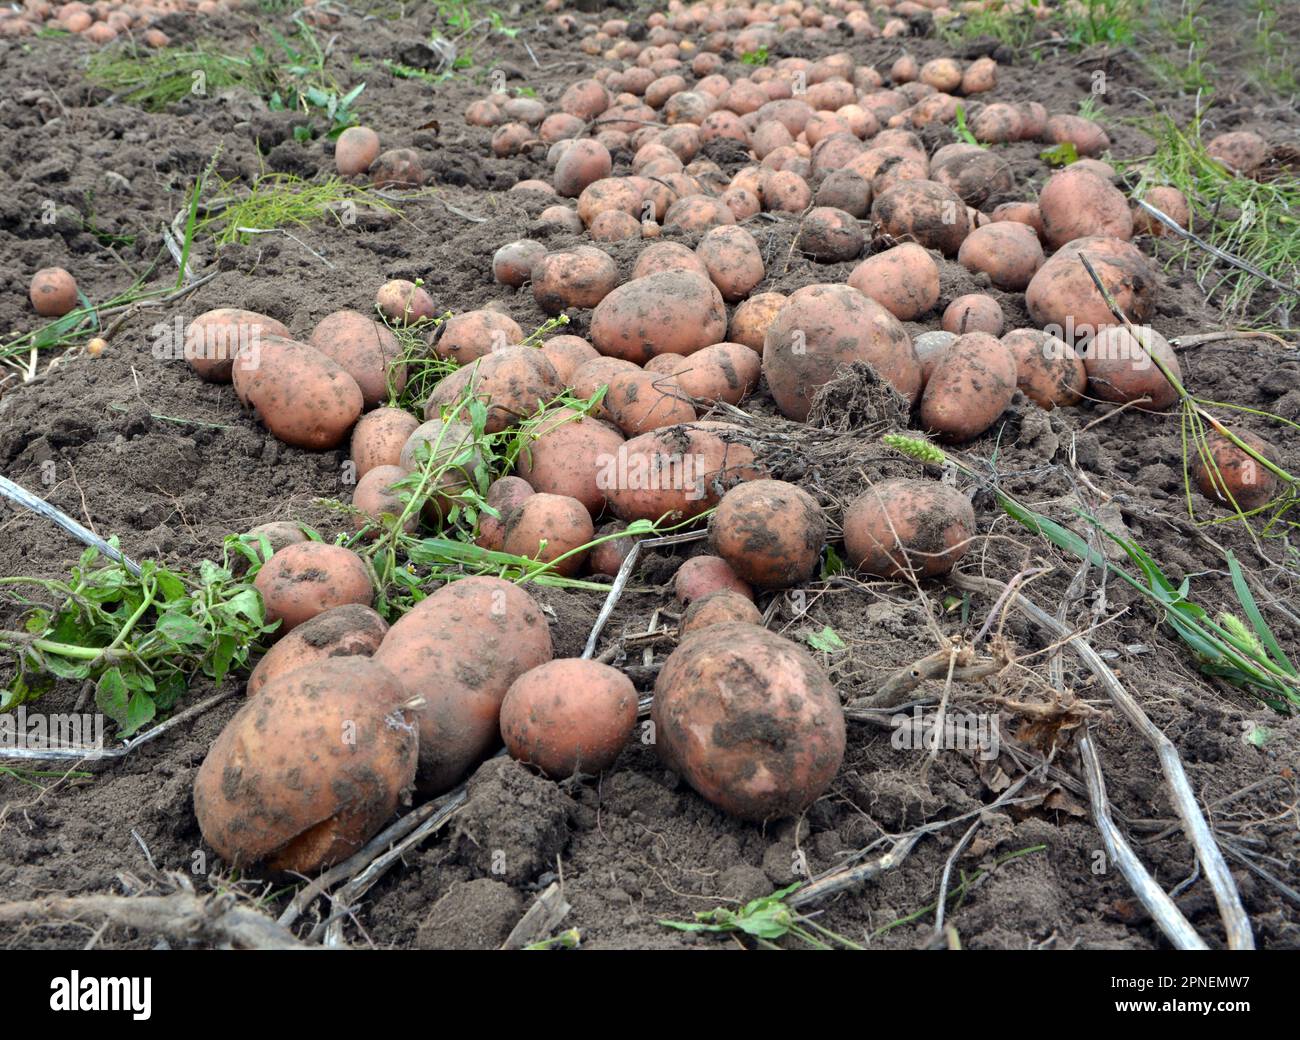 As soon as the potato crop, dug in the farm field, lies in a row. Stock Photo